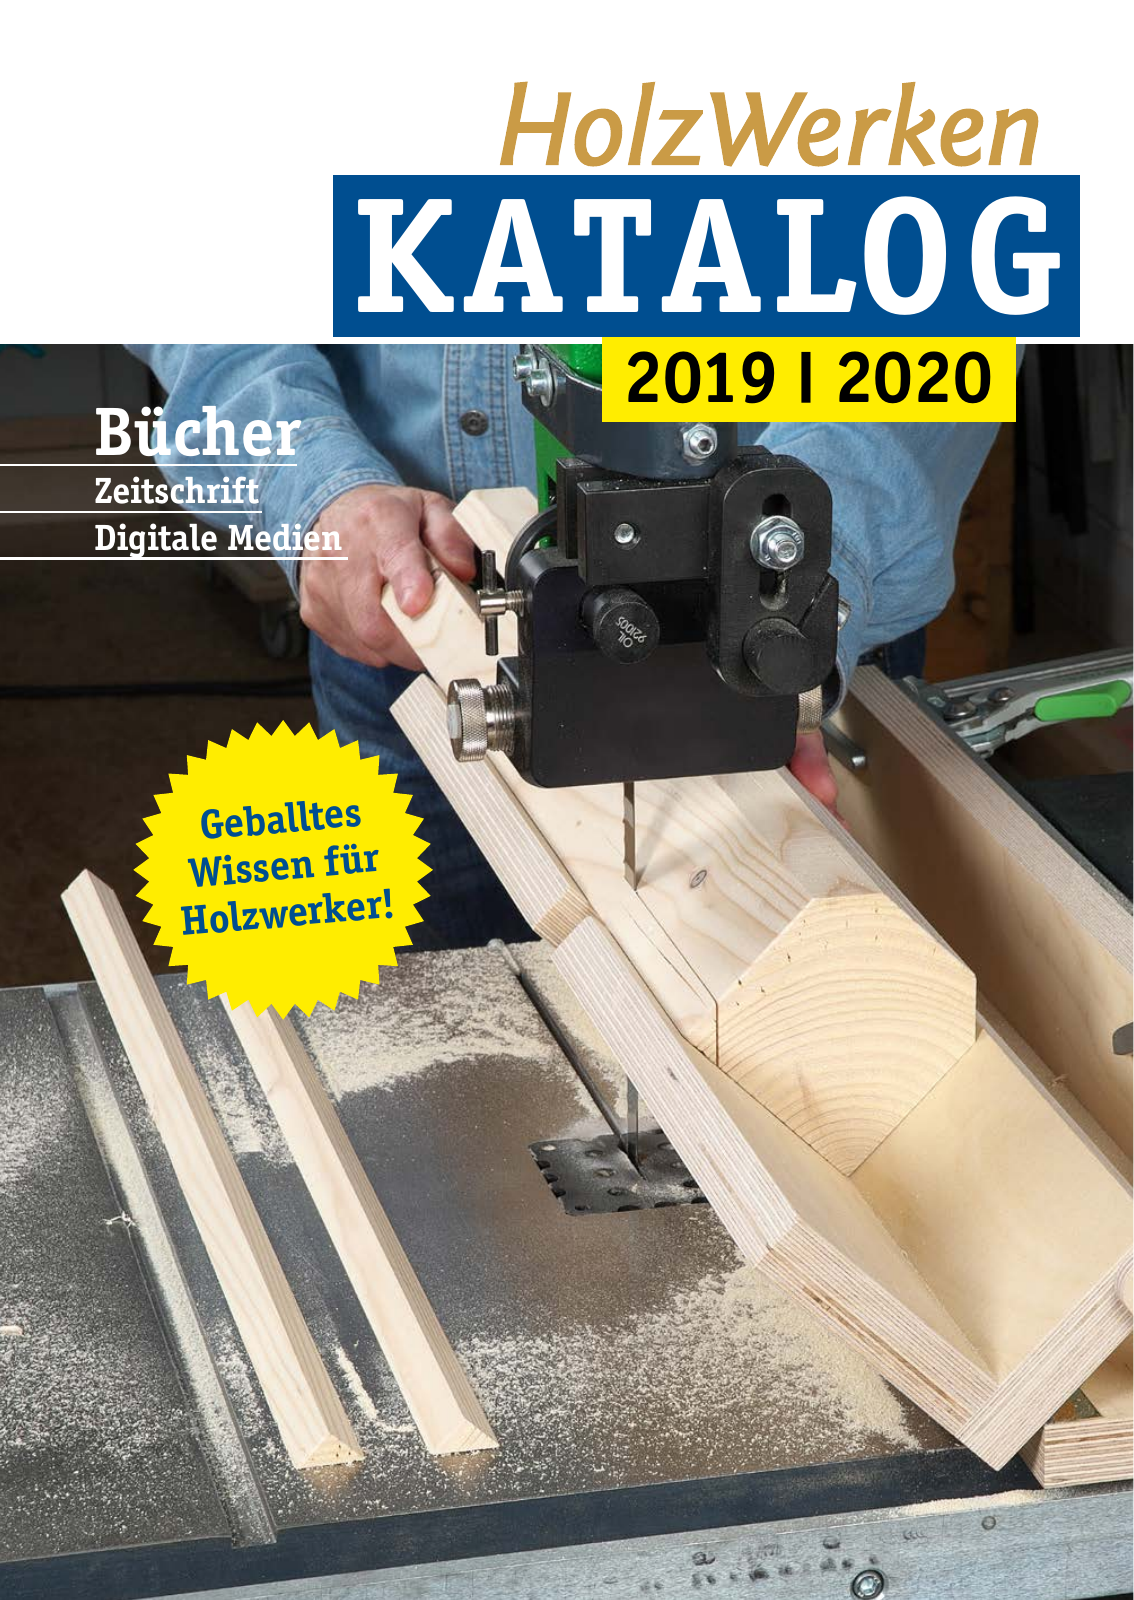 Vorschau HolzWerken Katalog 2020 Seite 1